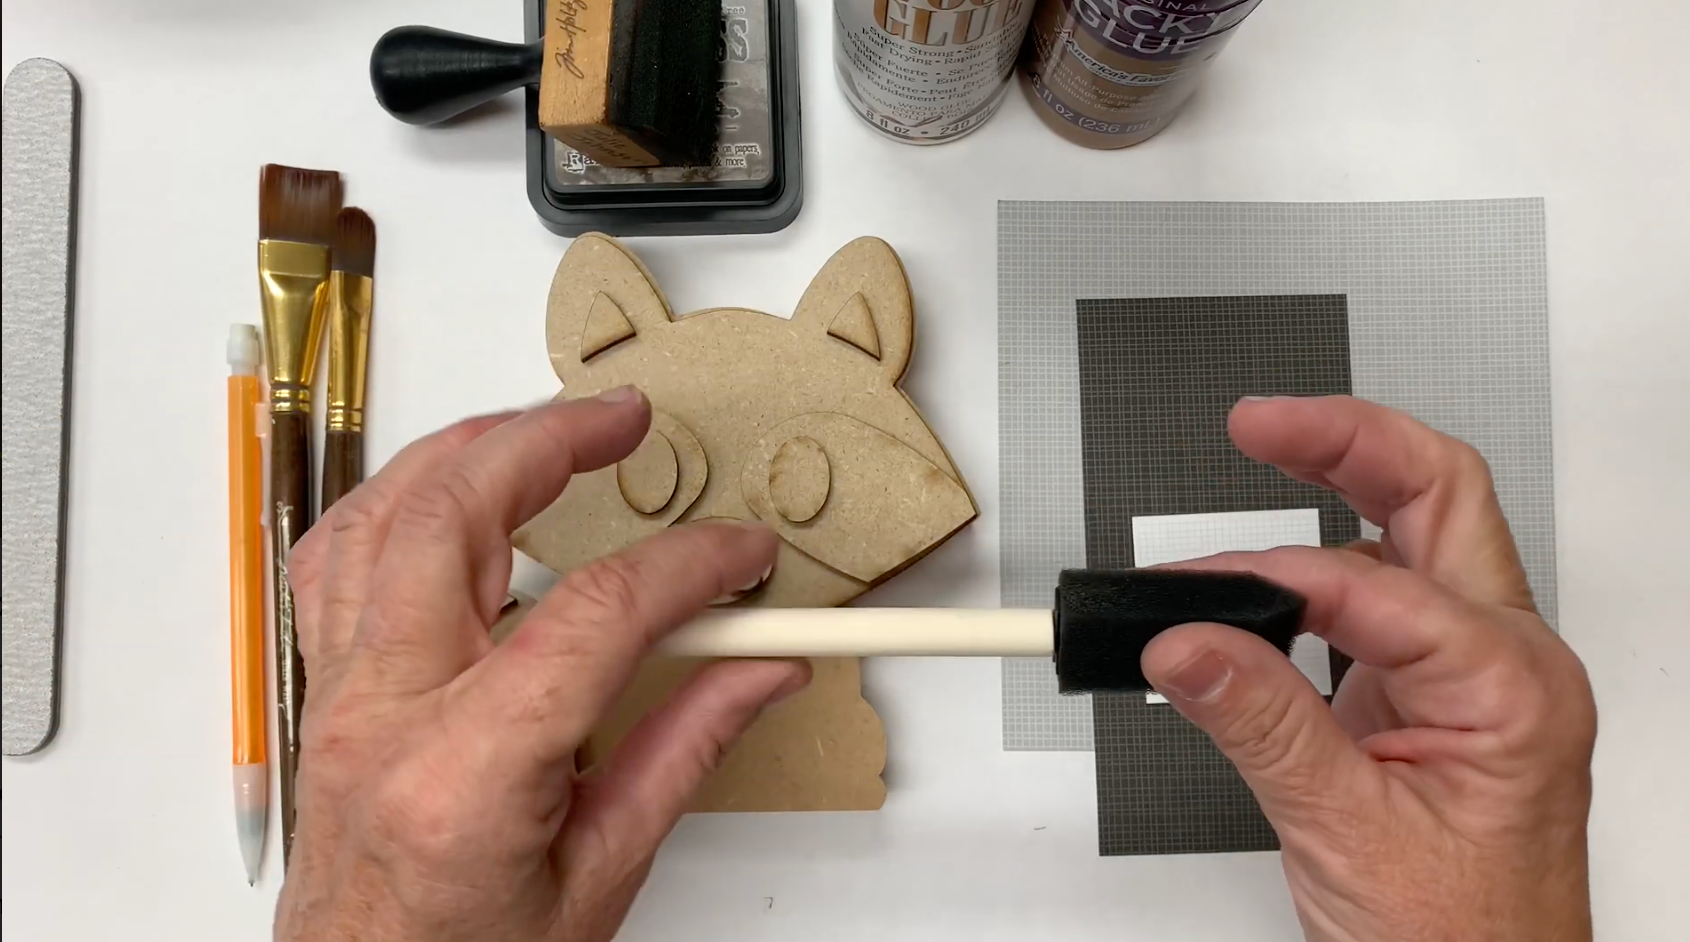 Raccoon Wood Craft Tutorial